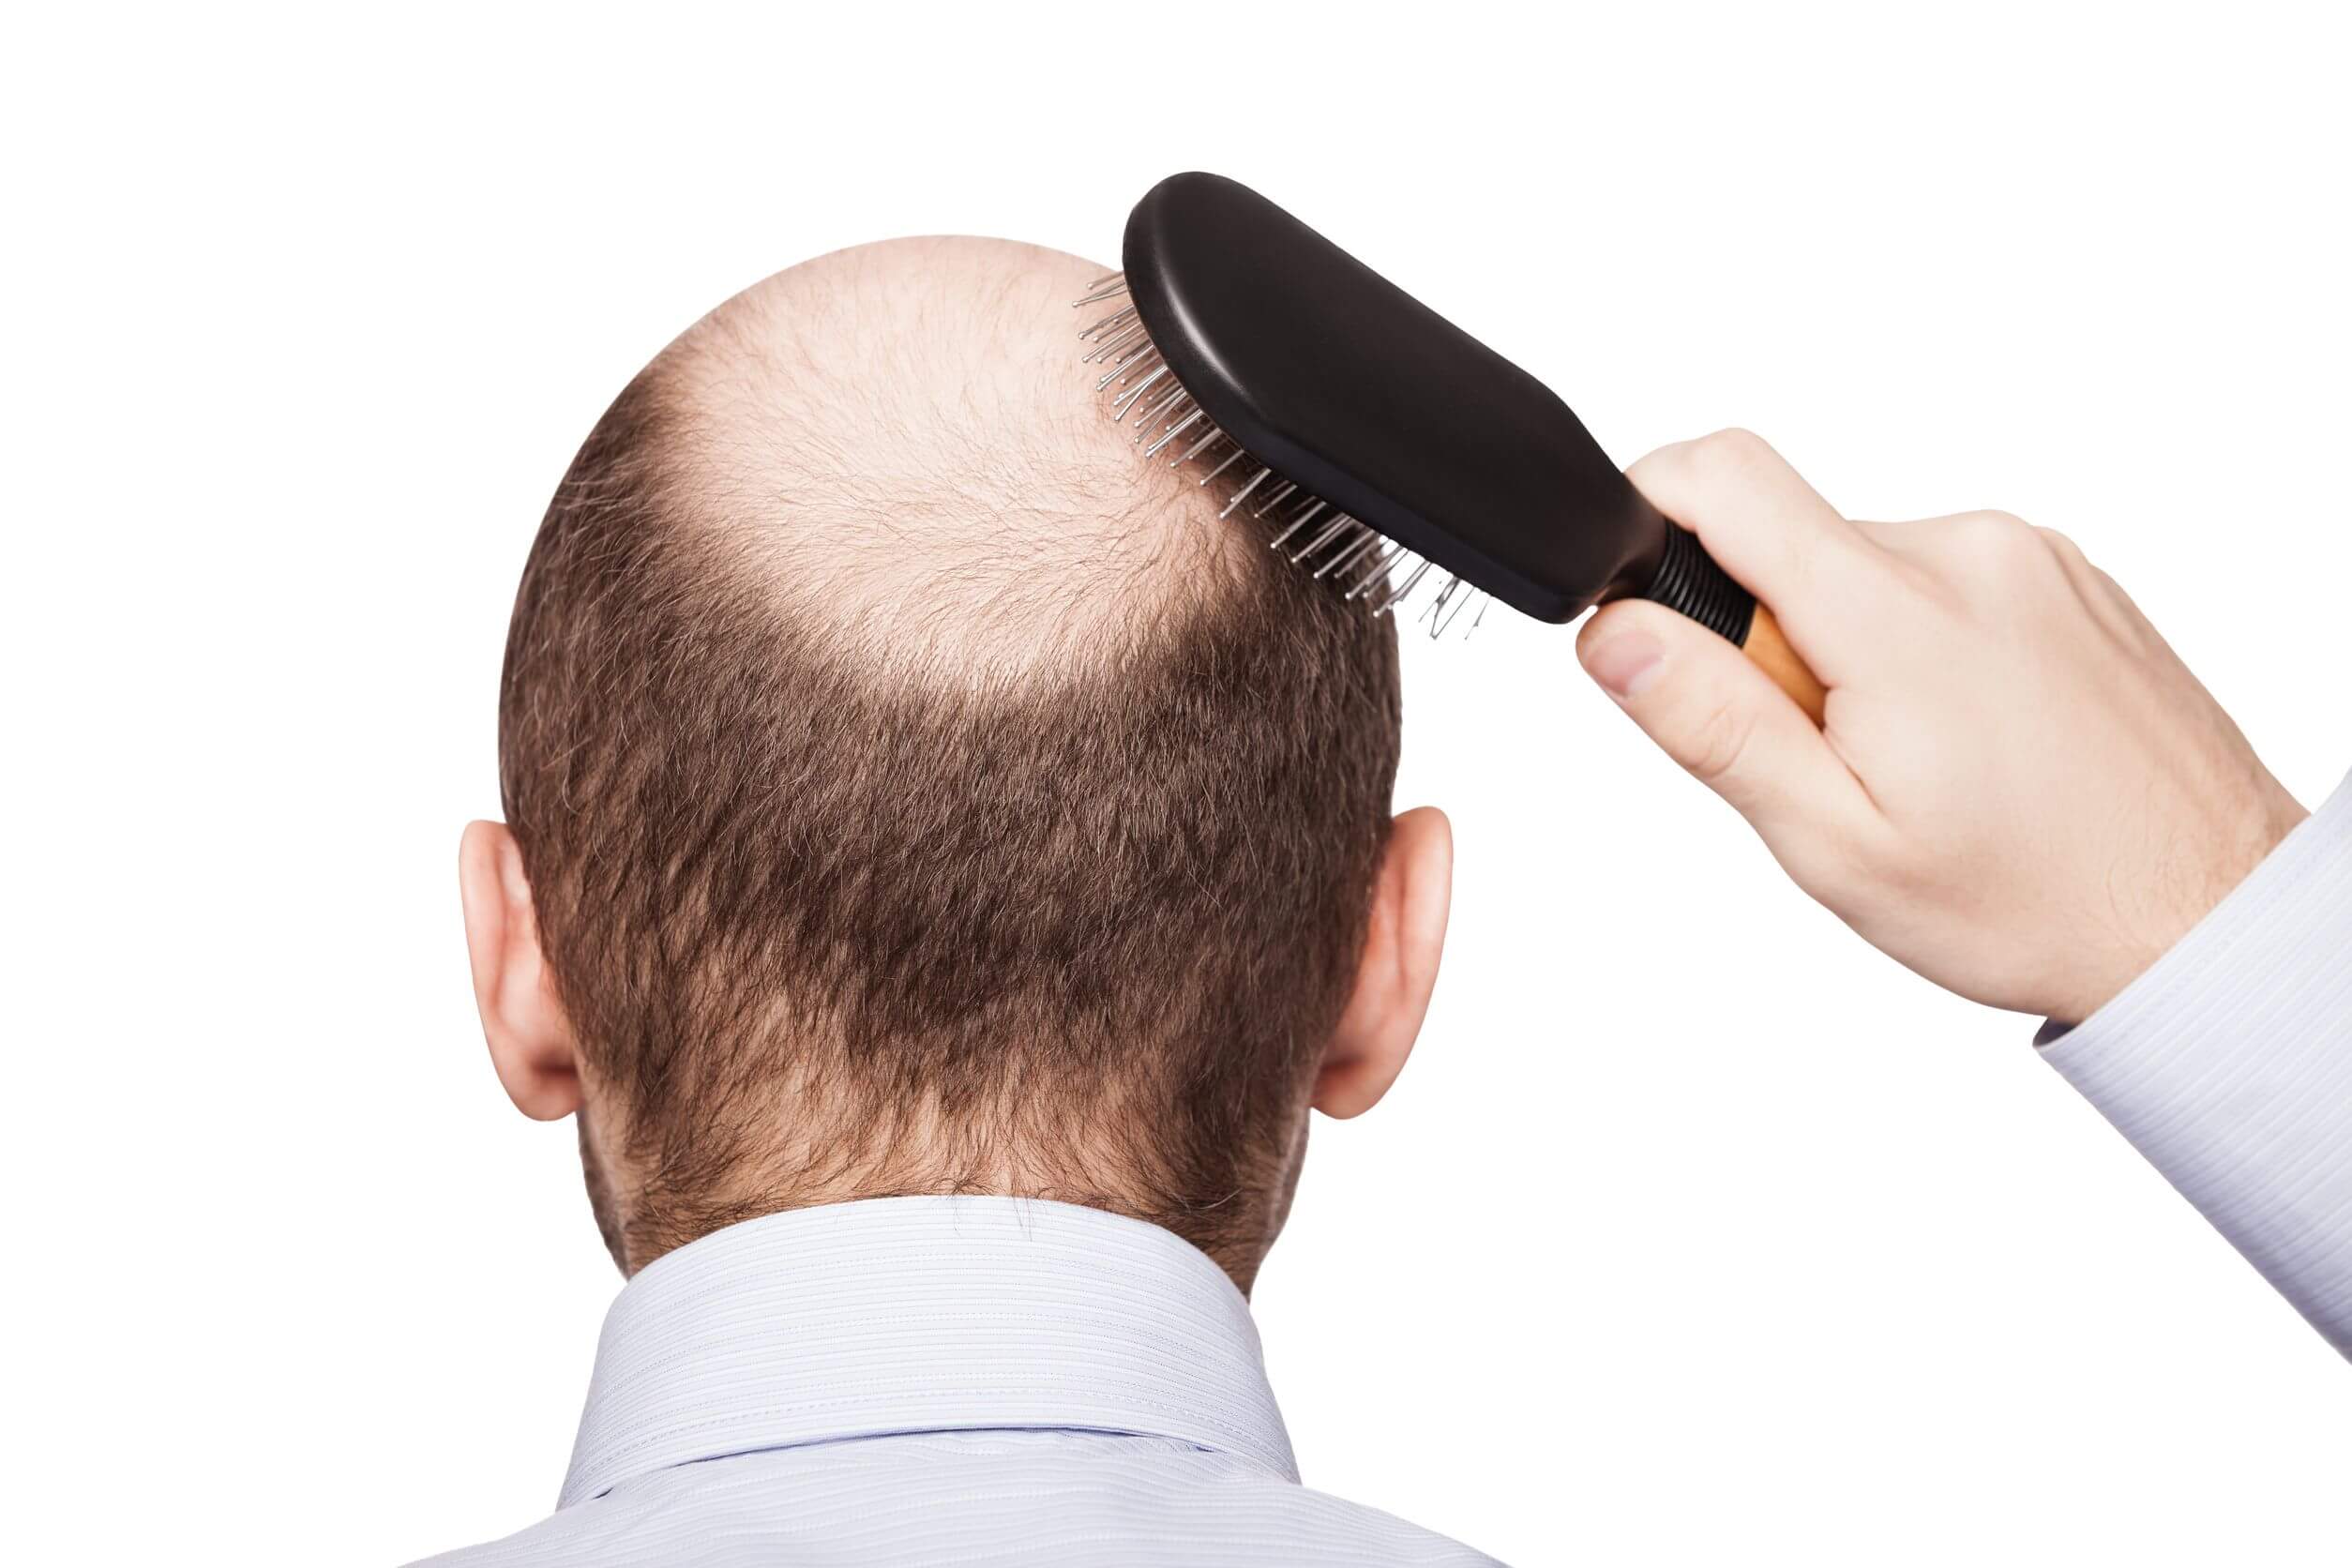 Common illnesses in men include androgenic alopecia.